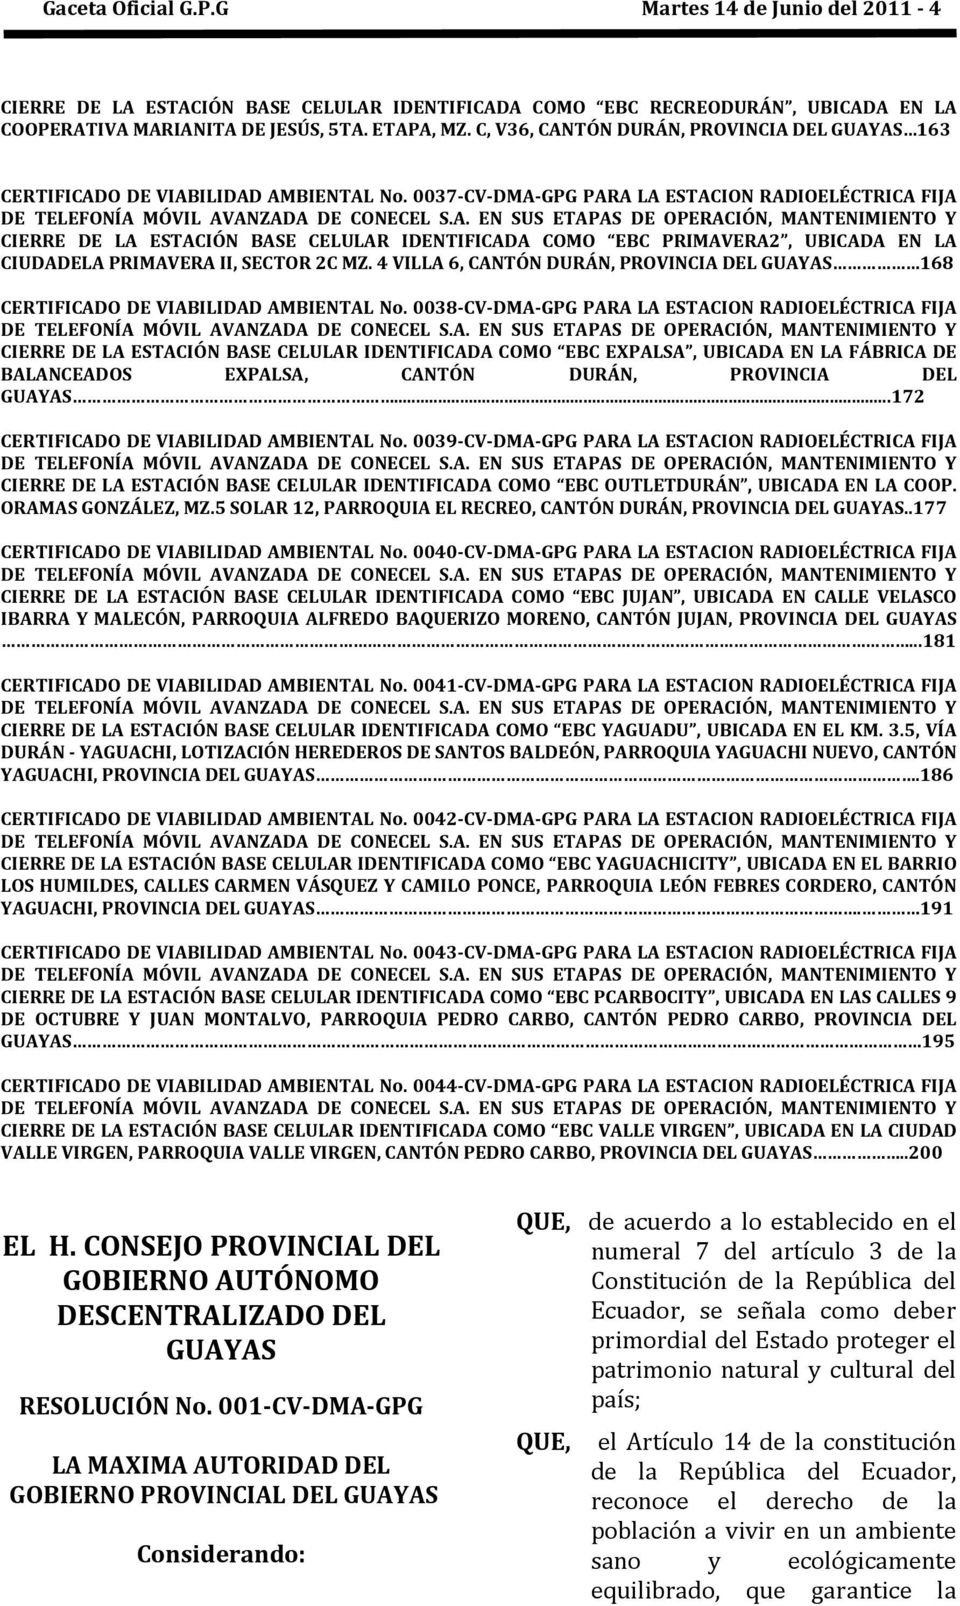 4 VILLA 6, CANTÓN DURÁN, PROVINCIA DEL GUAYAS 168 CERTIFICADO DE VIABILIDAD AMBIENTAL No. 0038-CV-DMA-GPG PARA LA ESTACION RADIOELÉCTRICA FIJA DE TELEFONÍA MÓVIL AVANZADA DE CONECEL S.A. EN SUS ETAPAS DE OPERACIÓN, MANTENIMIENTO Y CIERRE DE LA ESTACIÓN BASE CELULAR IDENTIFICADA COMO EBC EXPALSA, UBICADA EN LA FÁBRICA DE BALANCEADOS EXPALSA, CANTÓN DURÁN, PROVINCIA DEL GUAYAS.